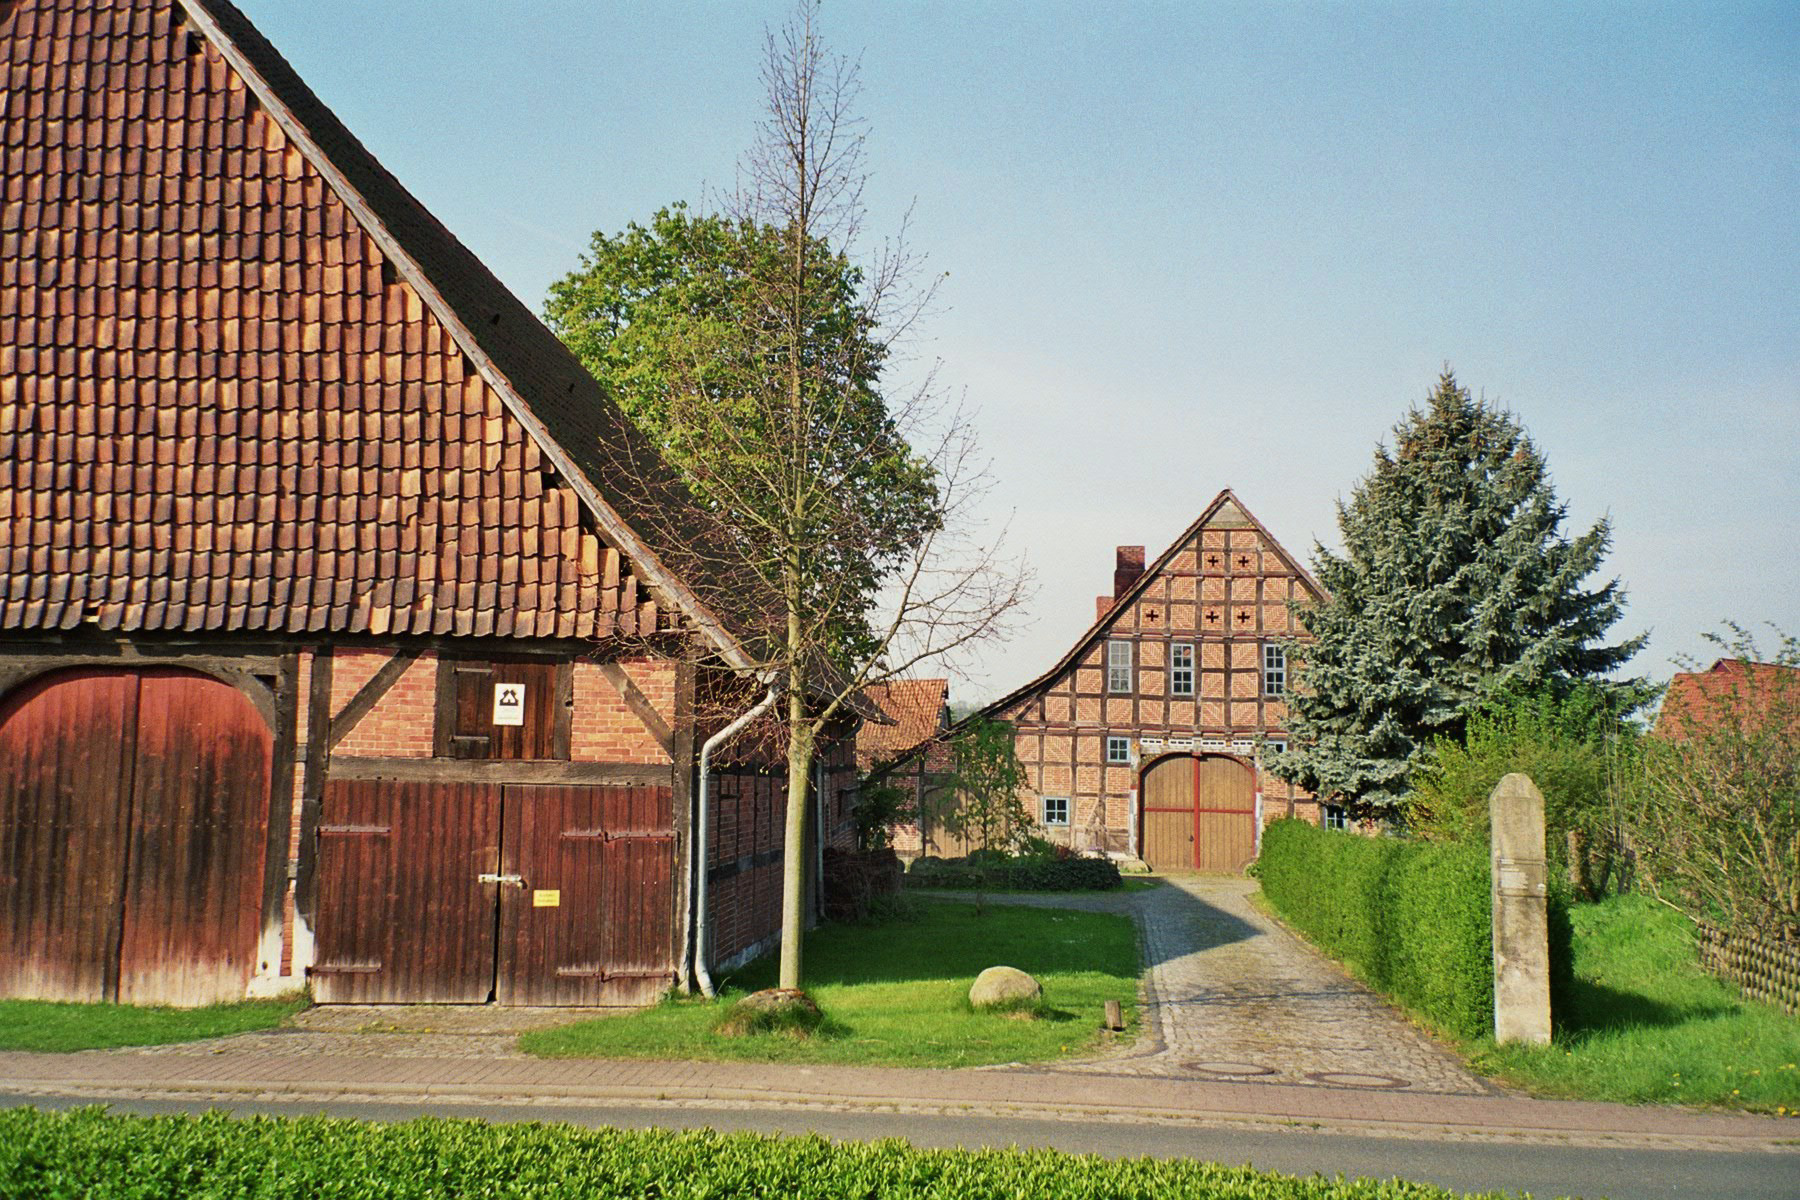 Meierhof